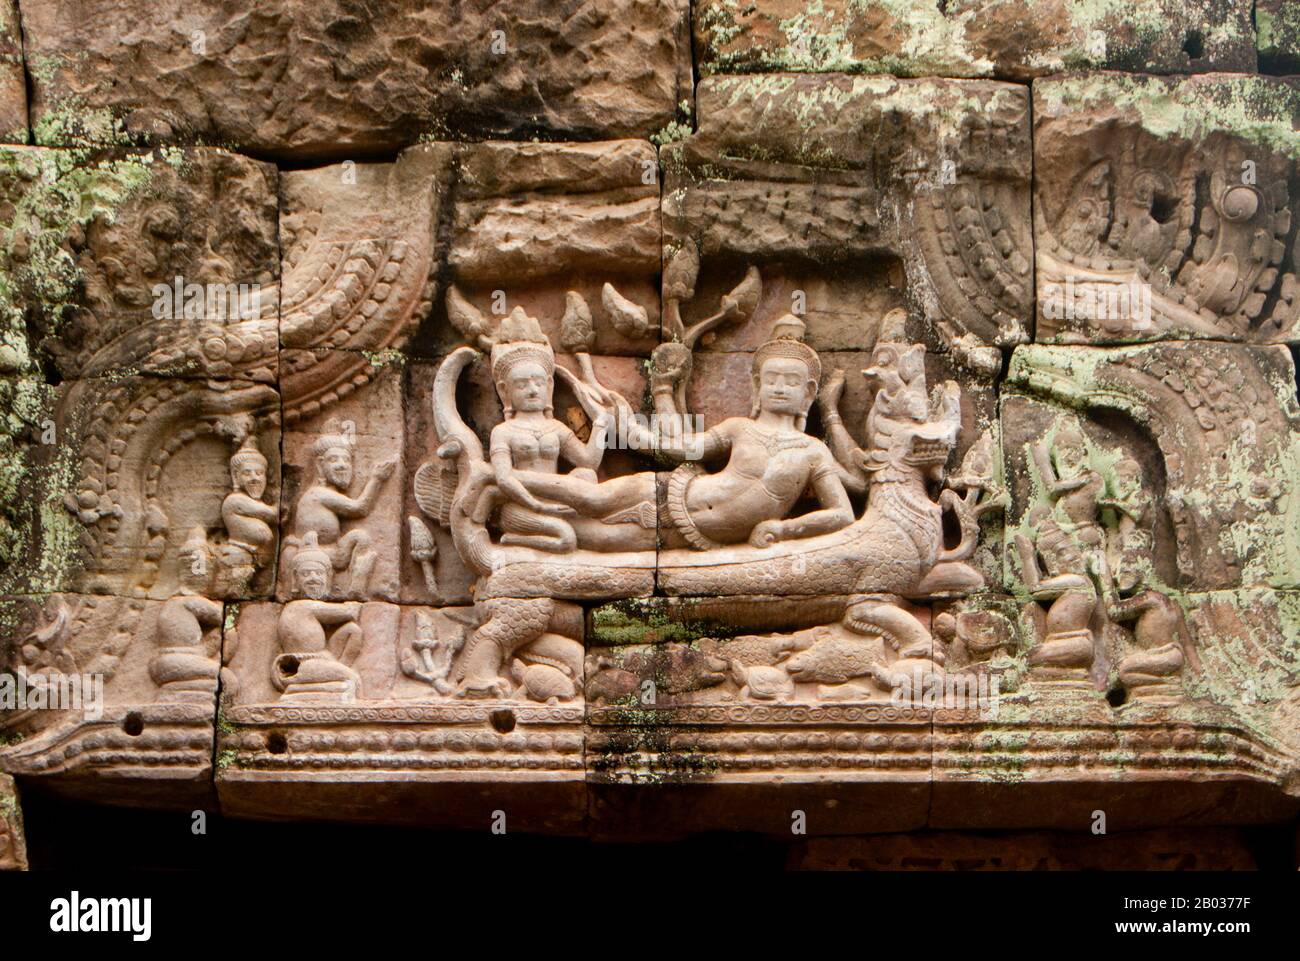 Cambogia: Vishnu Reclining su un frontone all'interno di Preah Khan, Angkor. Preah Khan (Tempio della Sacra spada) è stato costruito nel tardo 12th ° secolo (1191) da Jayavarman VII ed è situato a nord di Angkor Thom. Il tempio fu costruito sul luogo della vittoria di Jayavarman VII sui Chams invasori nel 1191. Era il centro di una grande organizzazione, con quasi 100.000 funzionari e funzionari. In un tempo era un'università buddista. La divinità primaria del tempio è la boddhisatva Avalokiteshvara, nella forma del padre di Jayavarman. Foto Stock